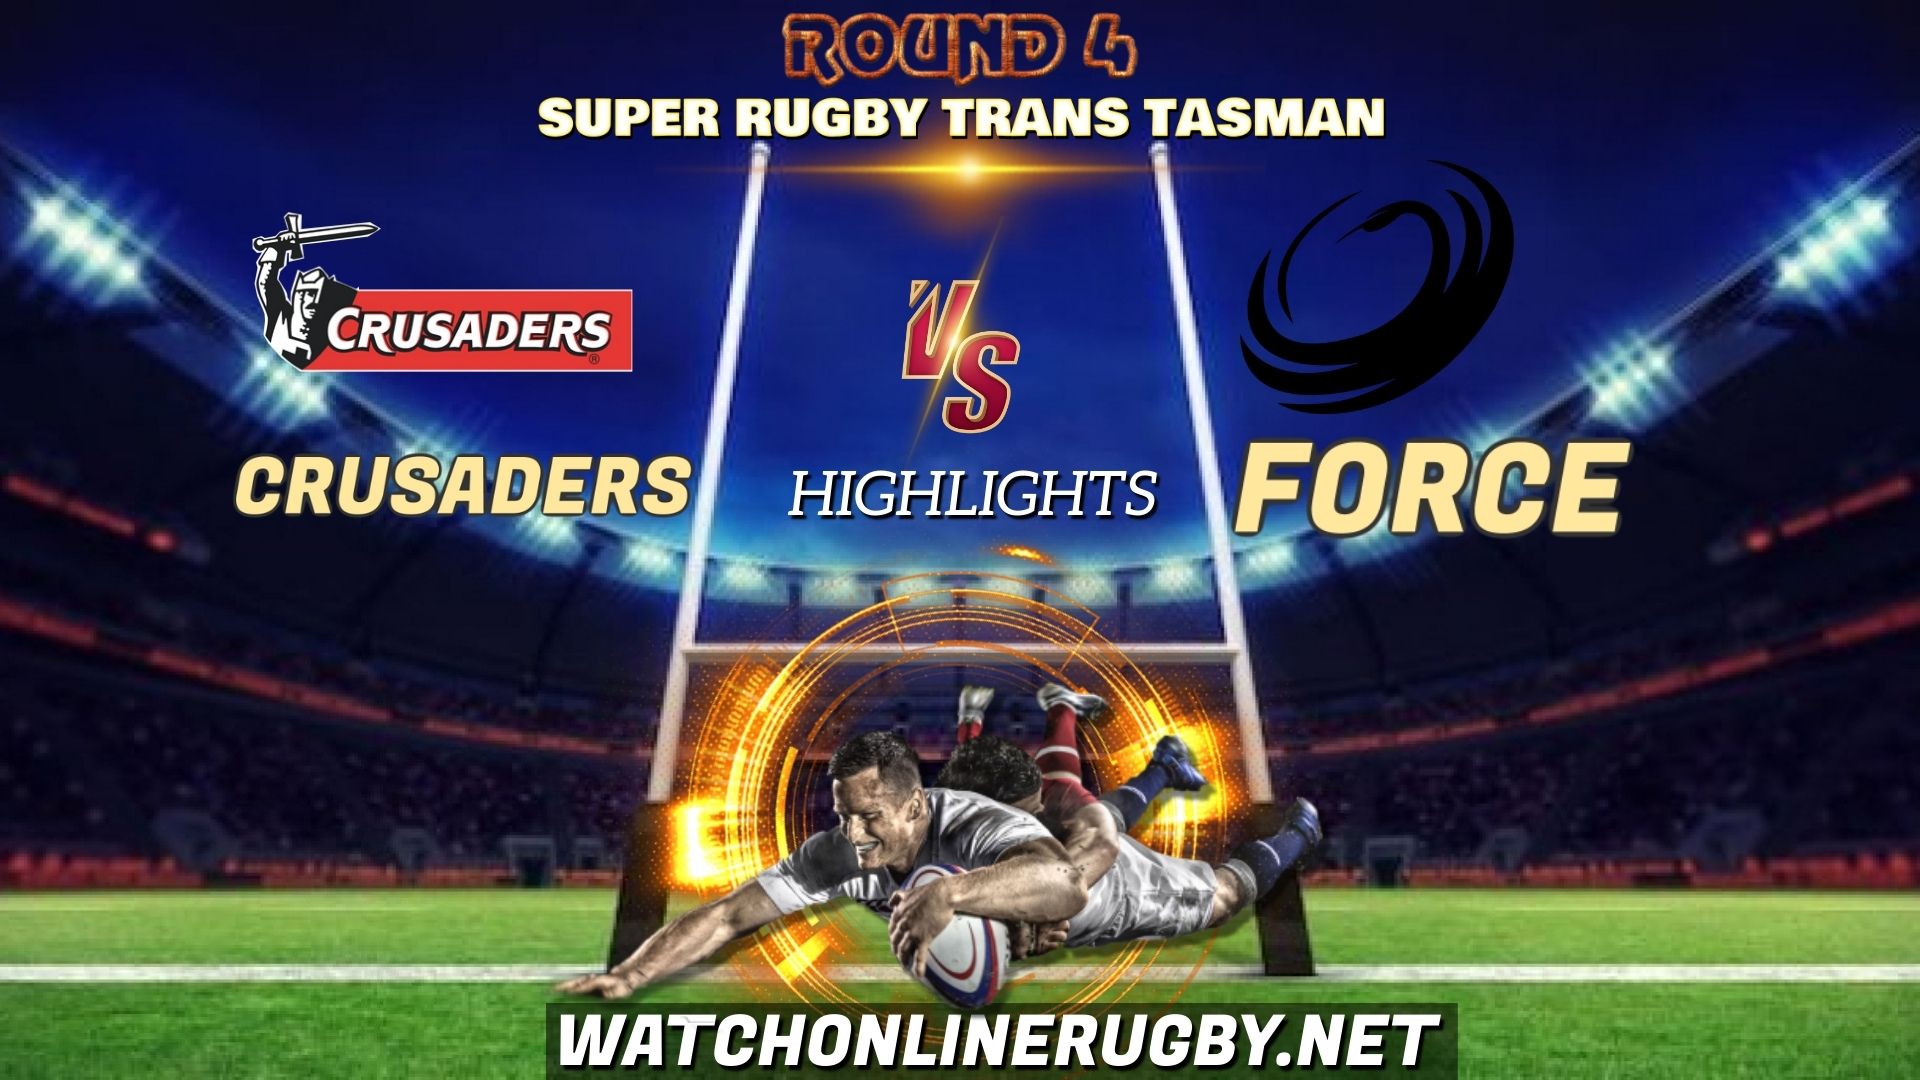 Crusaders Vs Force Super Rugby Trans Tasman 2021 RD 4